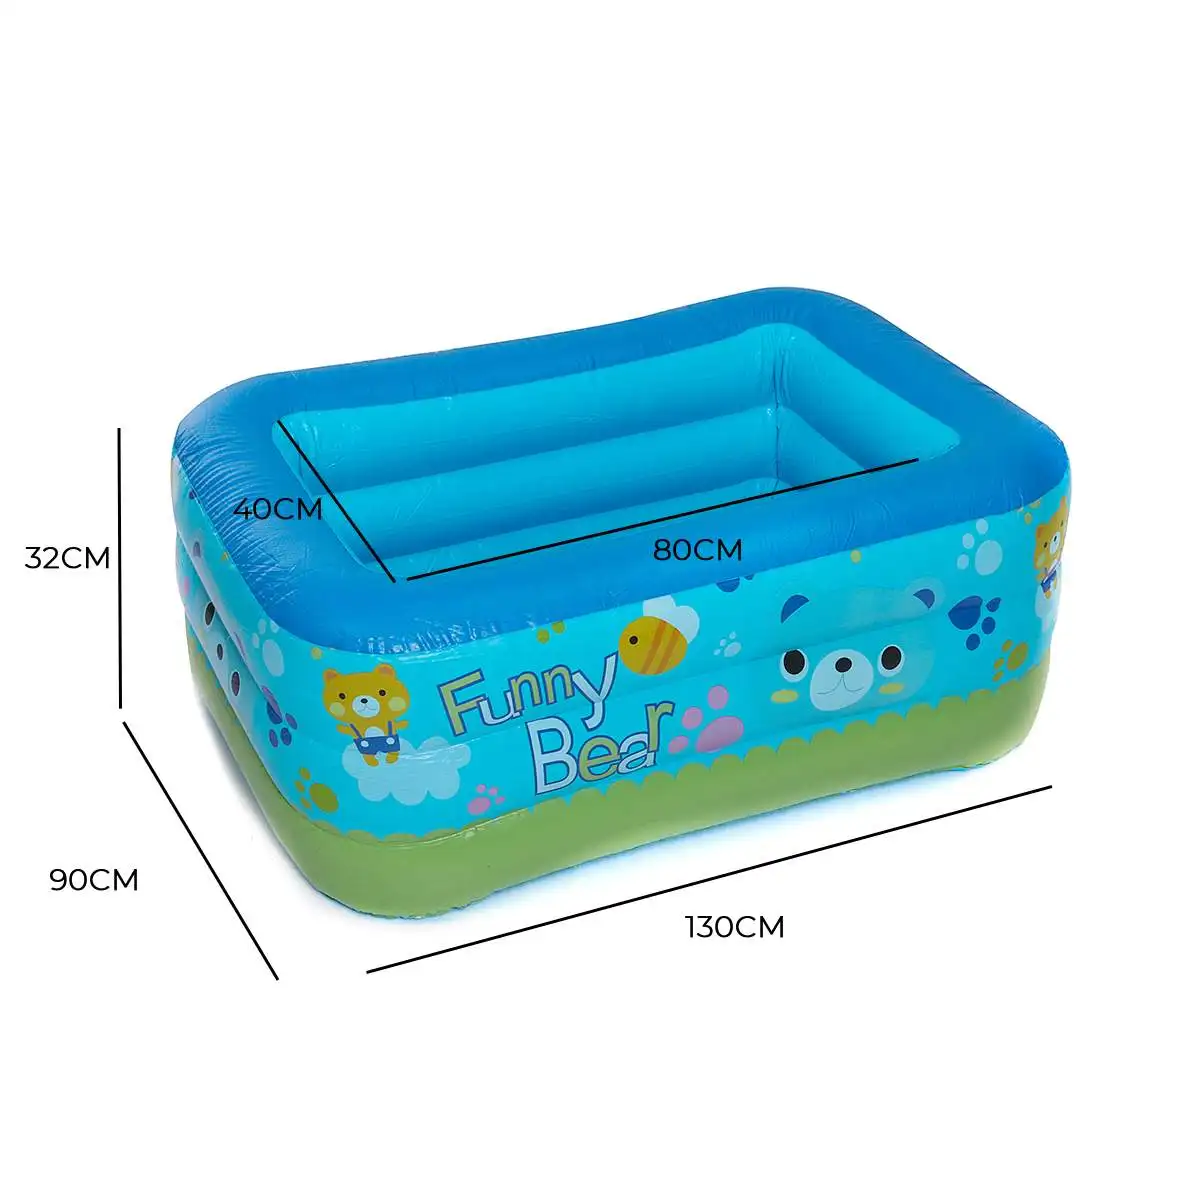 130 см детская ванна для купания для домашнего использования детский бассейн надувной квадратный бассейн детский надувной бассейн